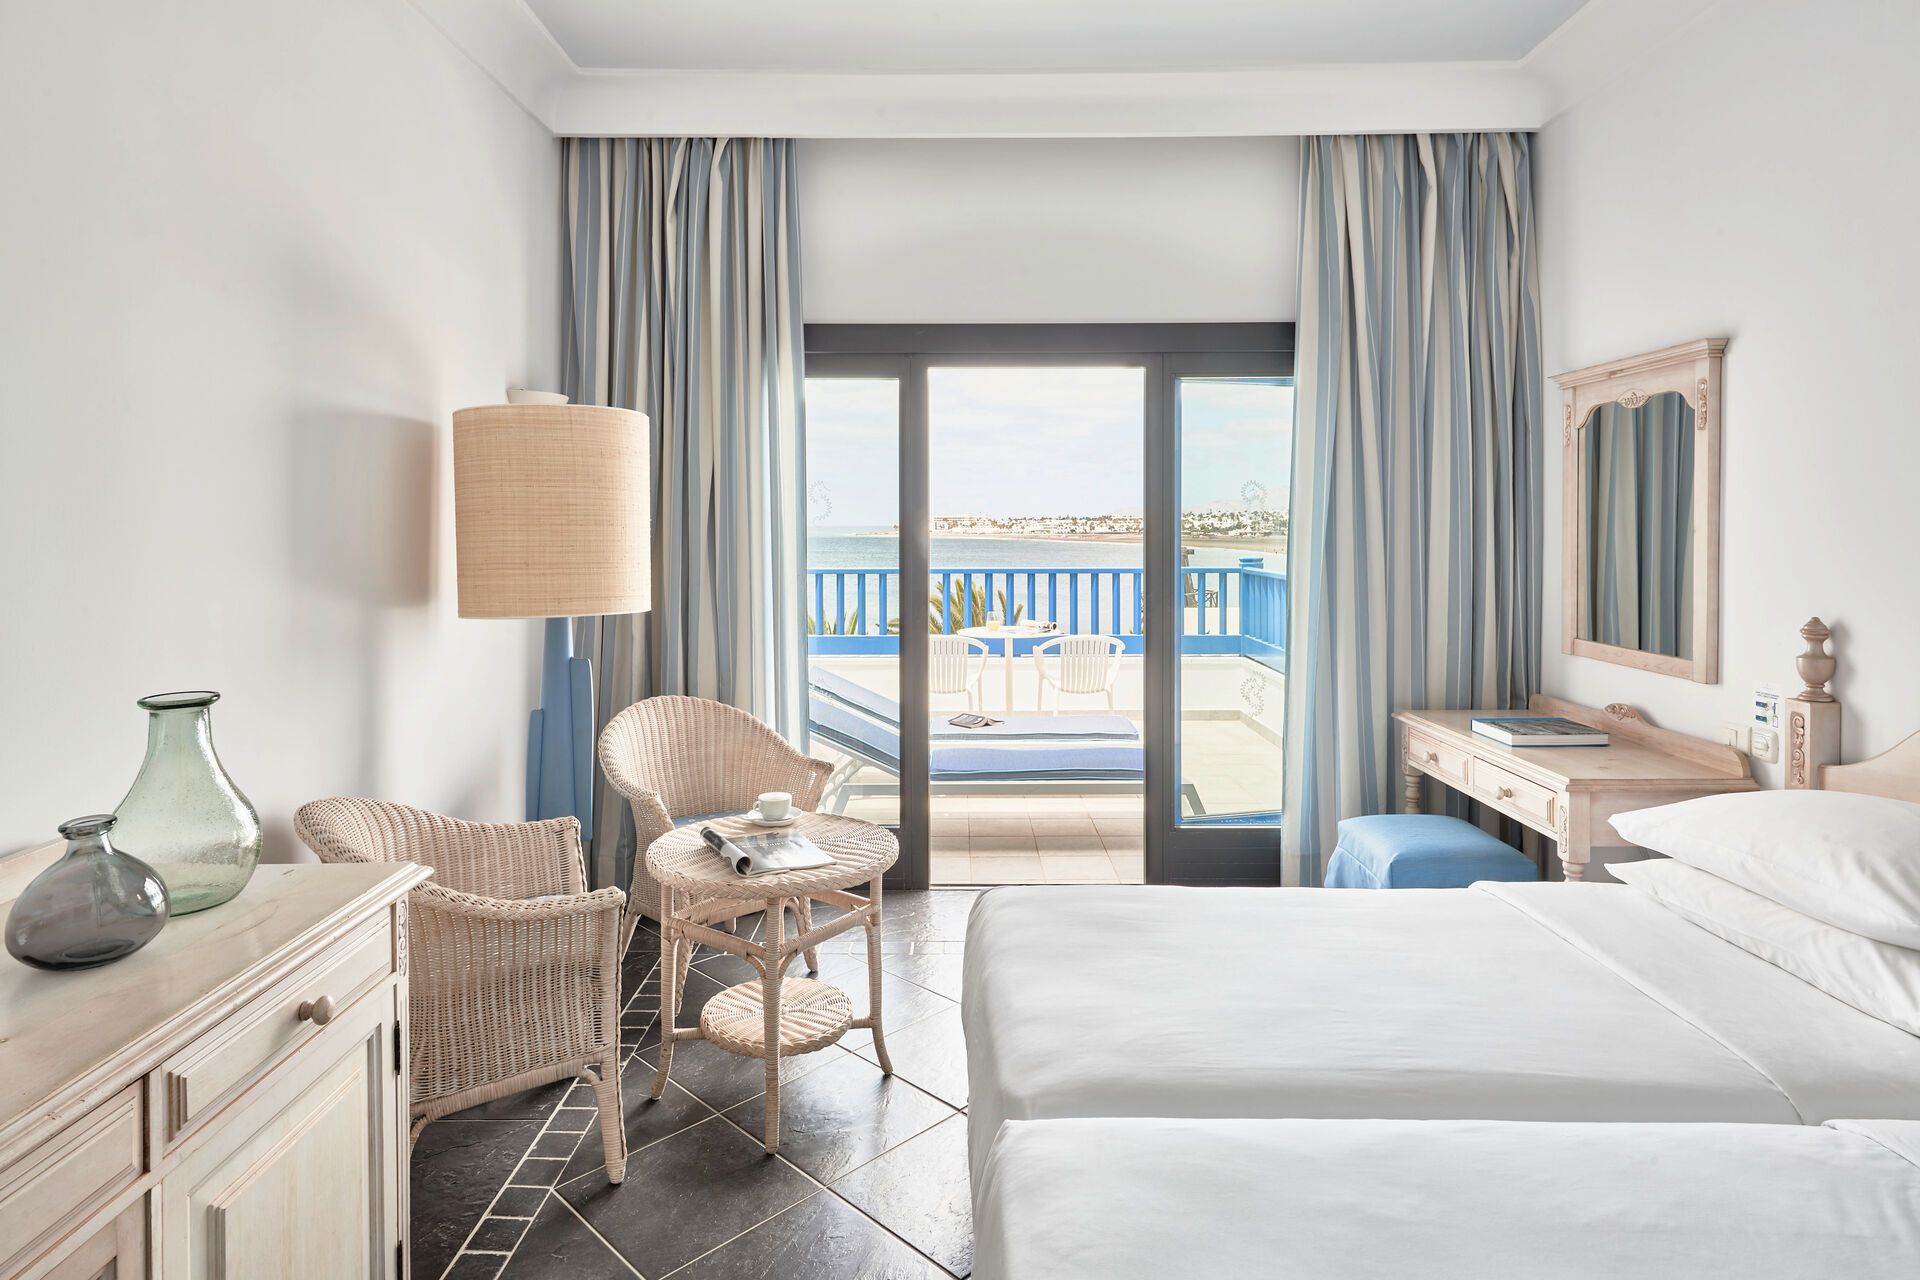 Canaries - Lanzarote - Espagne - Hôtel Seaside Los Jameos Playa 4*